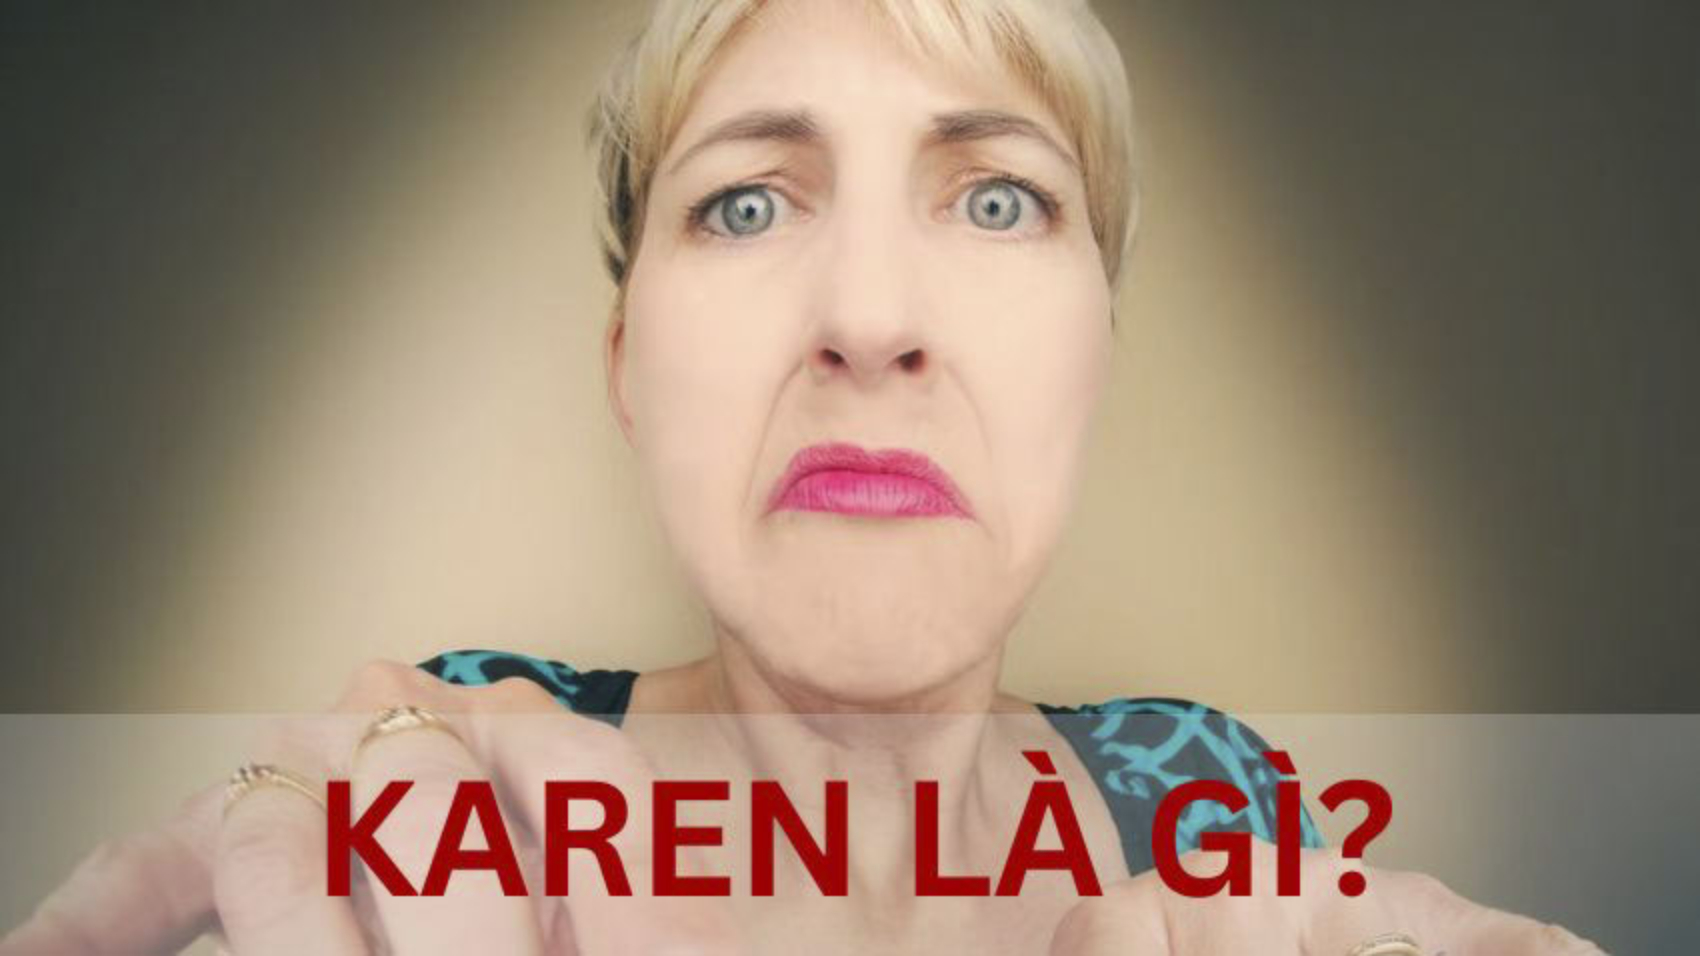 Karen là gì?